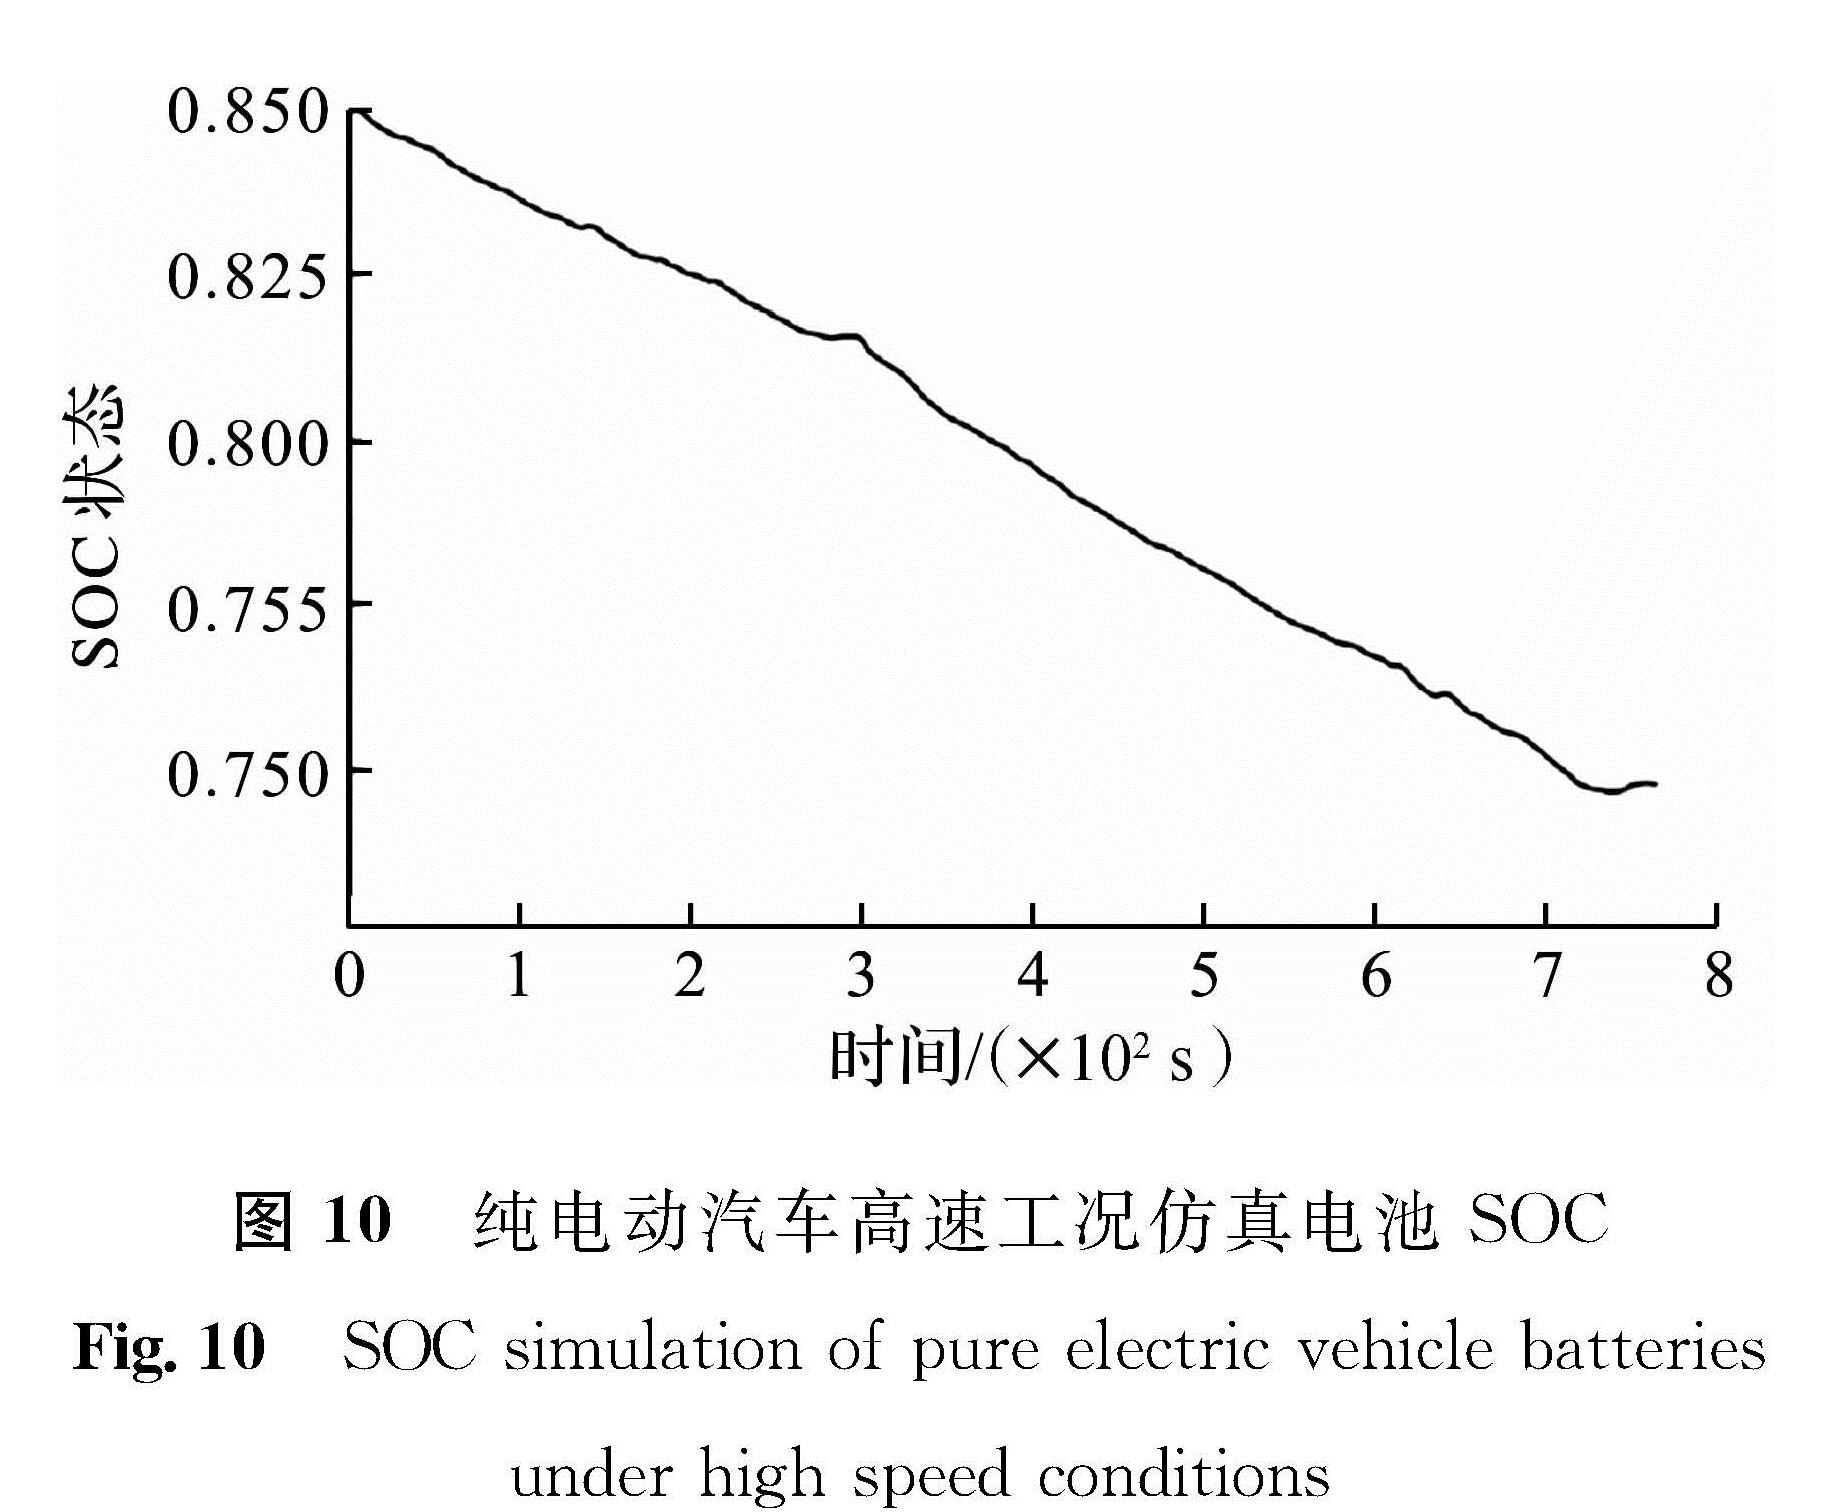 图 10 纯电动汽车高速工况仿真电池SOC<br/>Fig.10 SOC simulation of pure electric vehicle batteries under high speed conditions